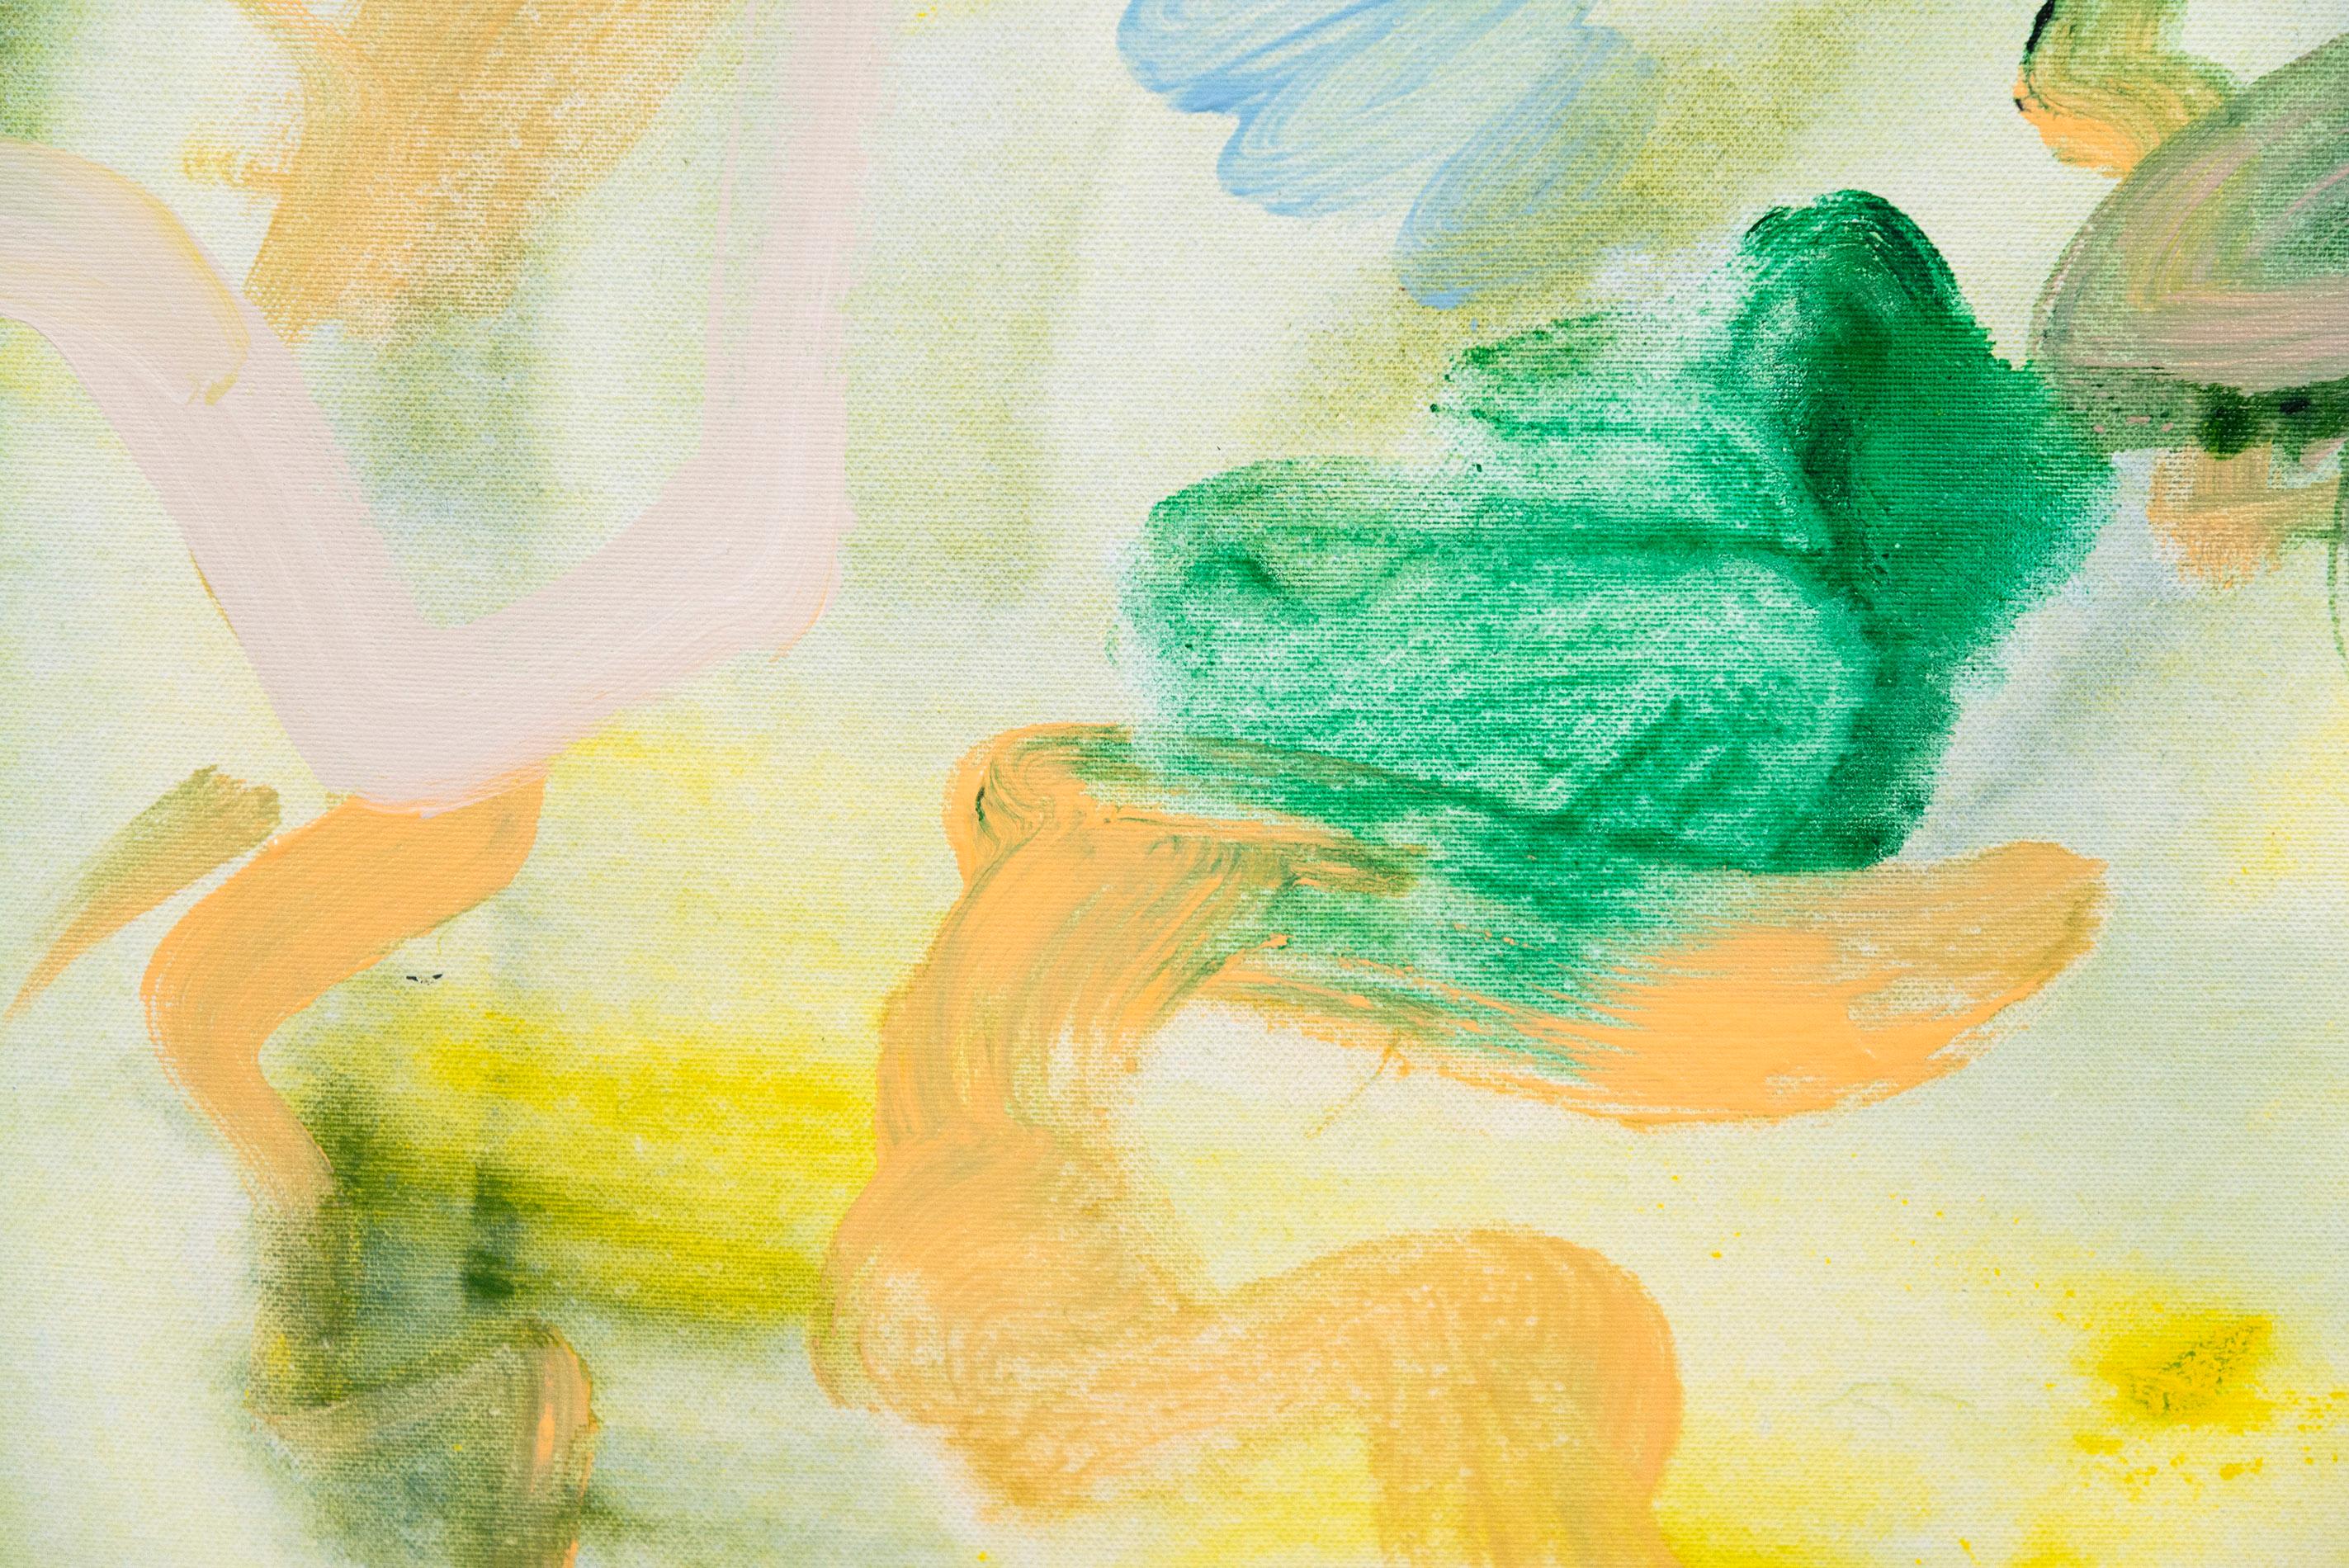 Der Satyr wird in Salzwasser gedrechselt - farbenfrohes, abstraktes Gemälde, Acryl auf Leinwand – Painting von Angela Letizia Renzi & Richard Tosczak